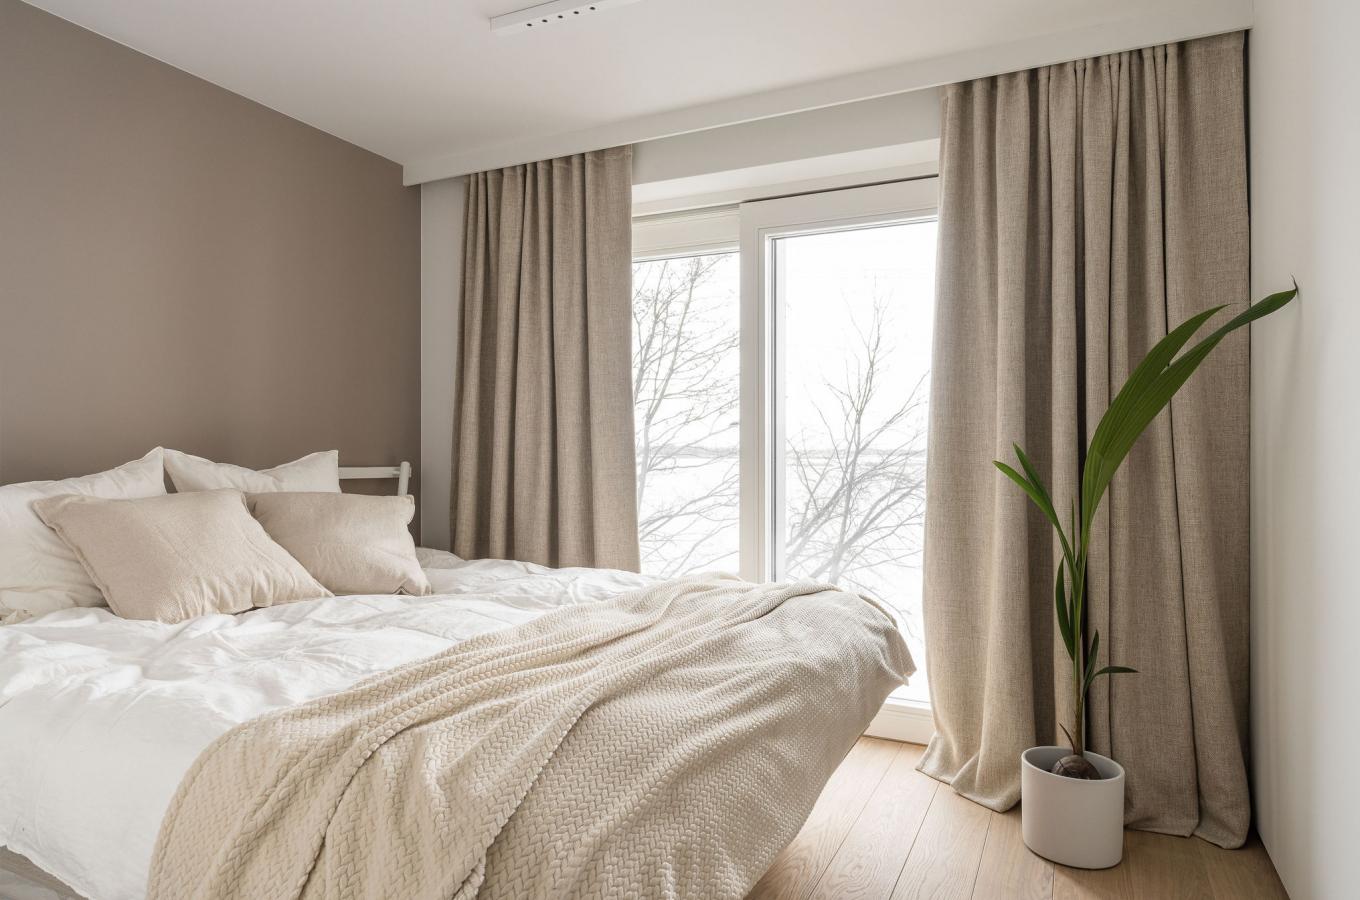 Cuối cùng, những ai yêu phong cách tối giản hiện đại sẽ có thiện cảm với phòng ngủ nhẹ nhàng, cửa sổ nhìn ra khung cảnh lãng mạn này. Chút sắc xanh của cây cảnh cũng giúp thổi thêm sức sống cho gam màu be.